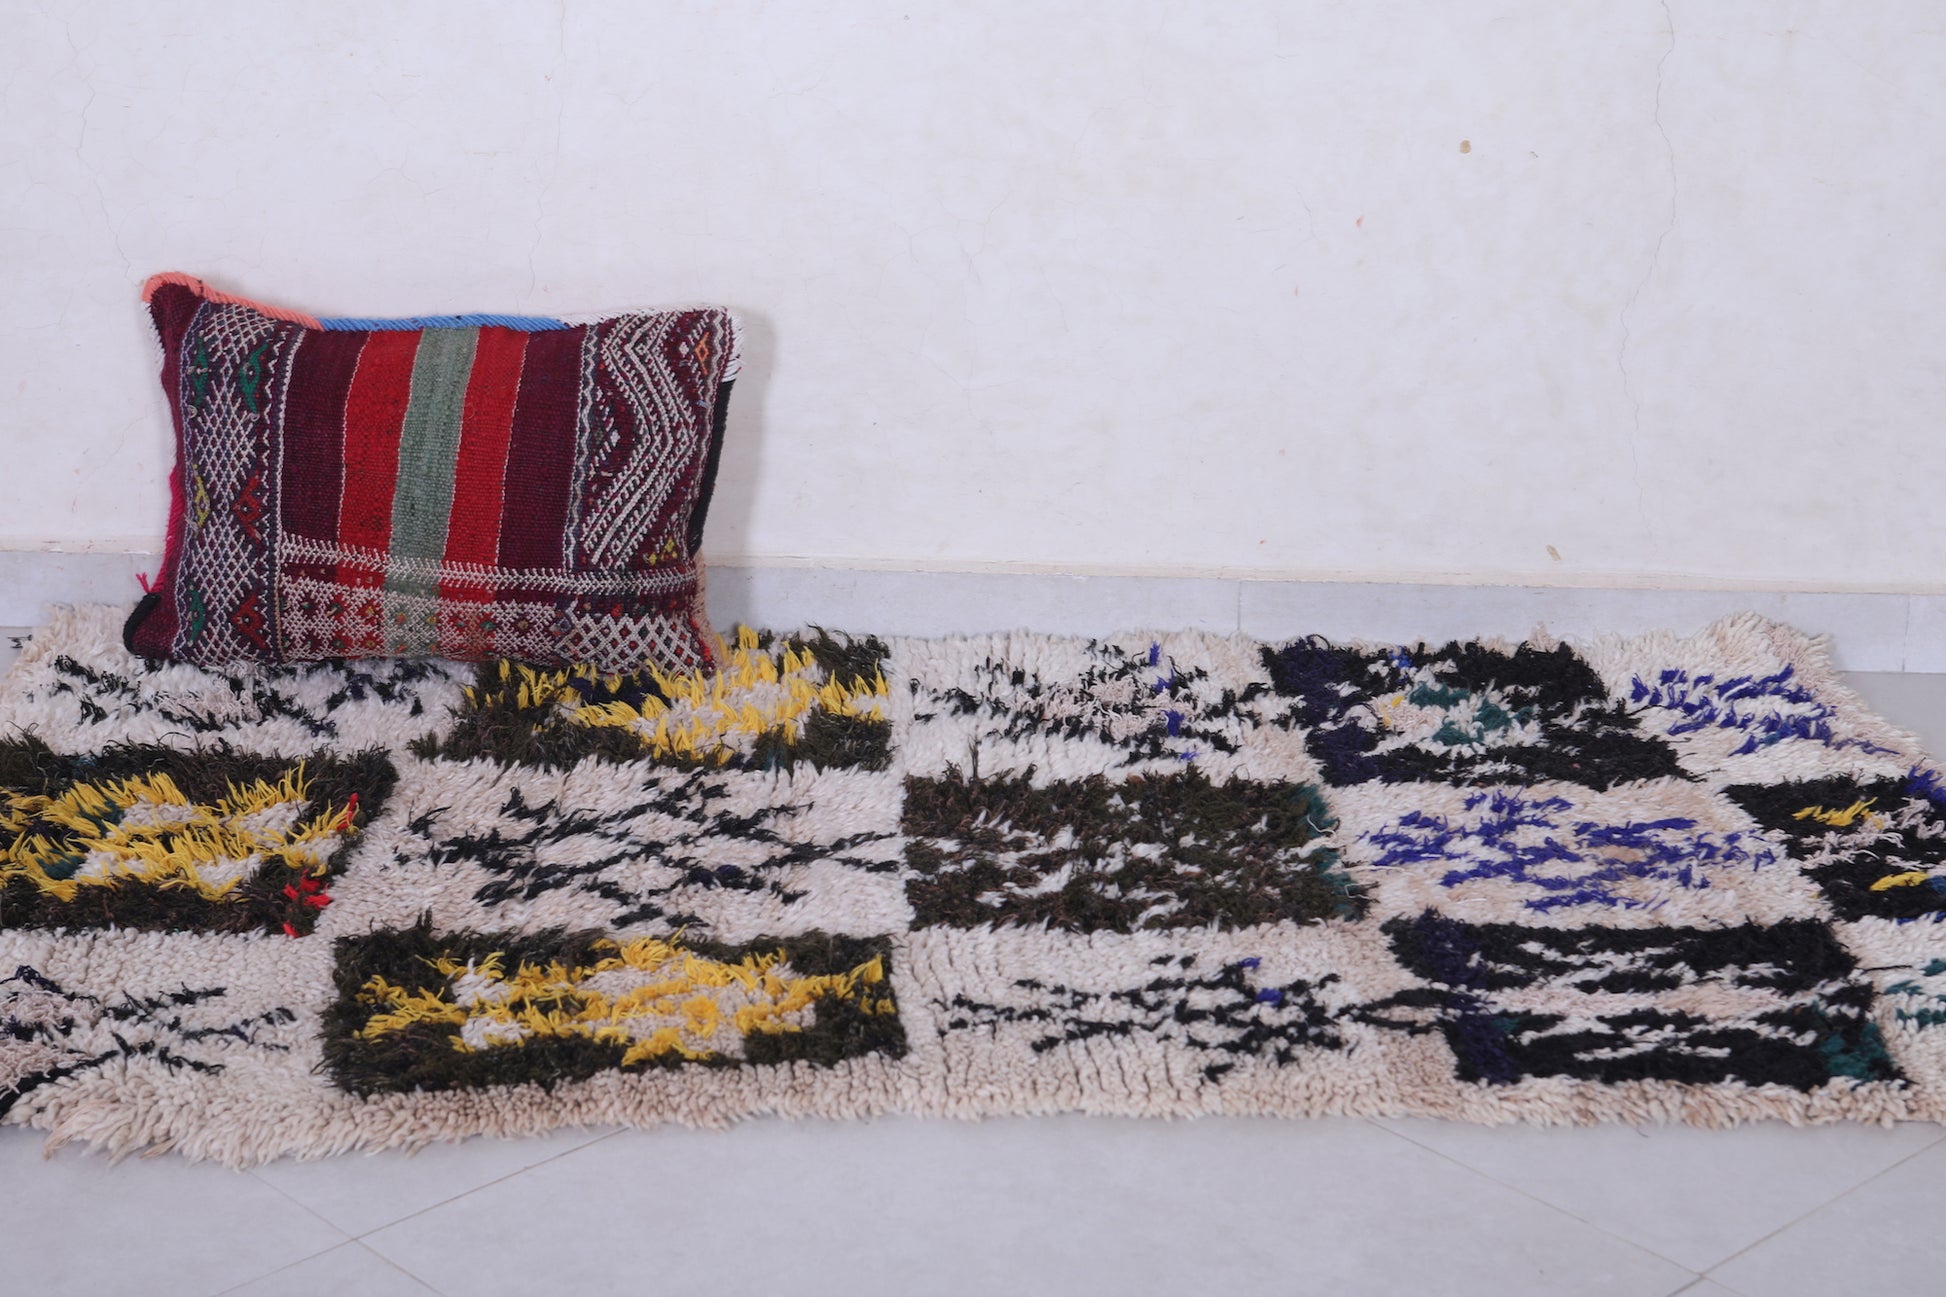 Vintage handmade moroccan berber runner rug  2.9 FT X 5.8 FT